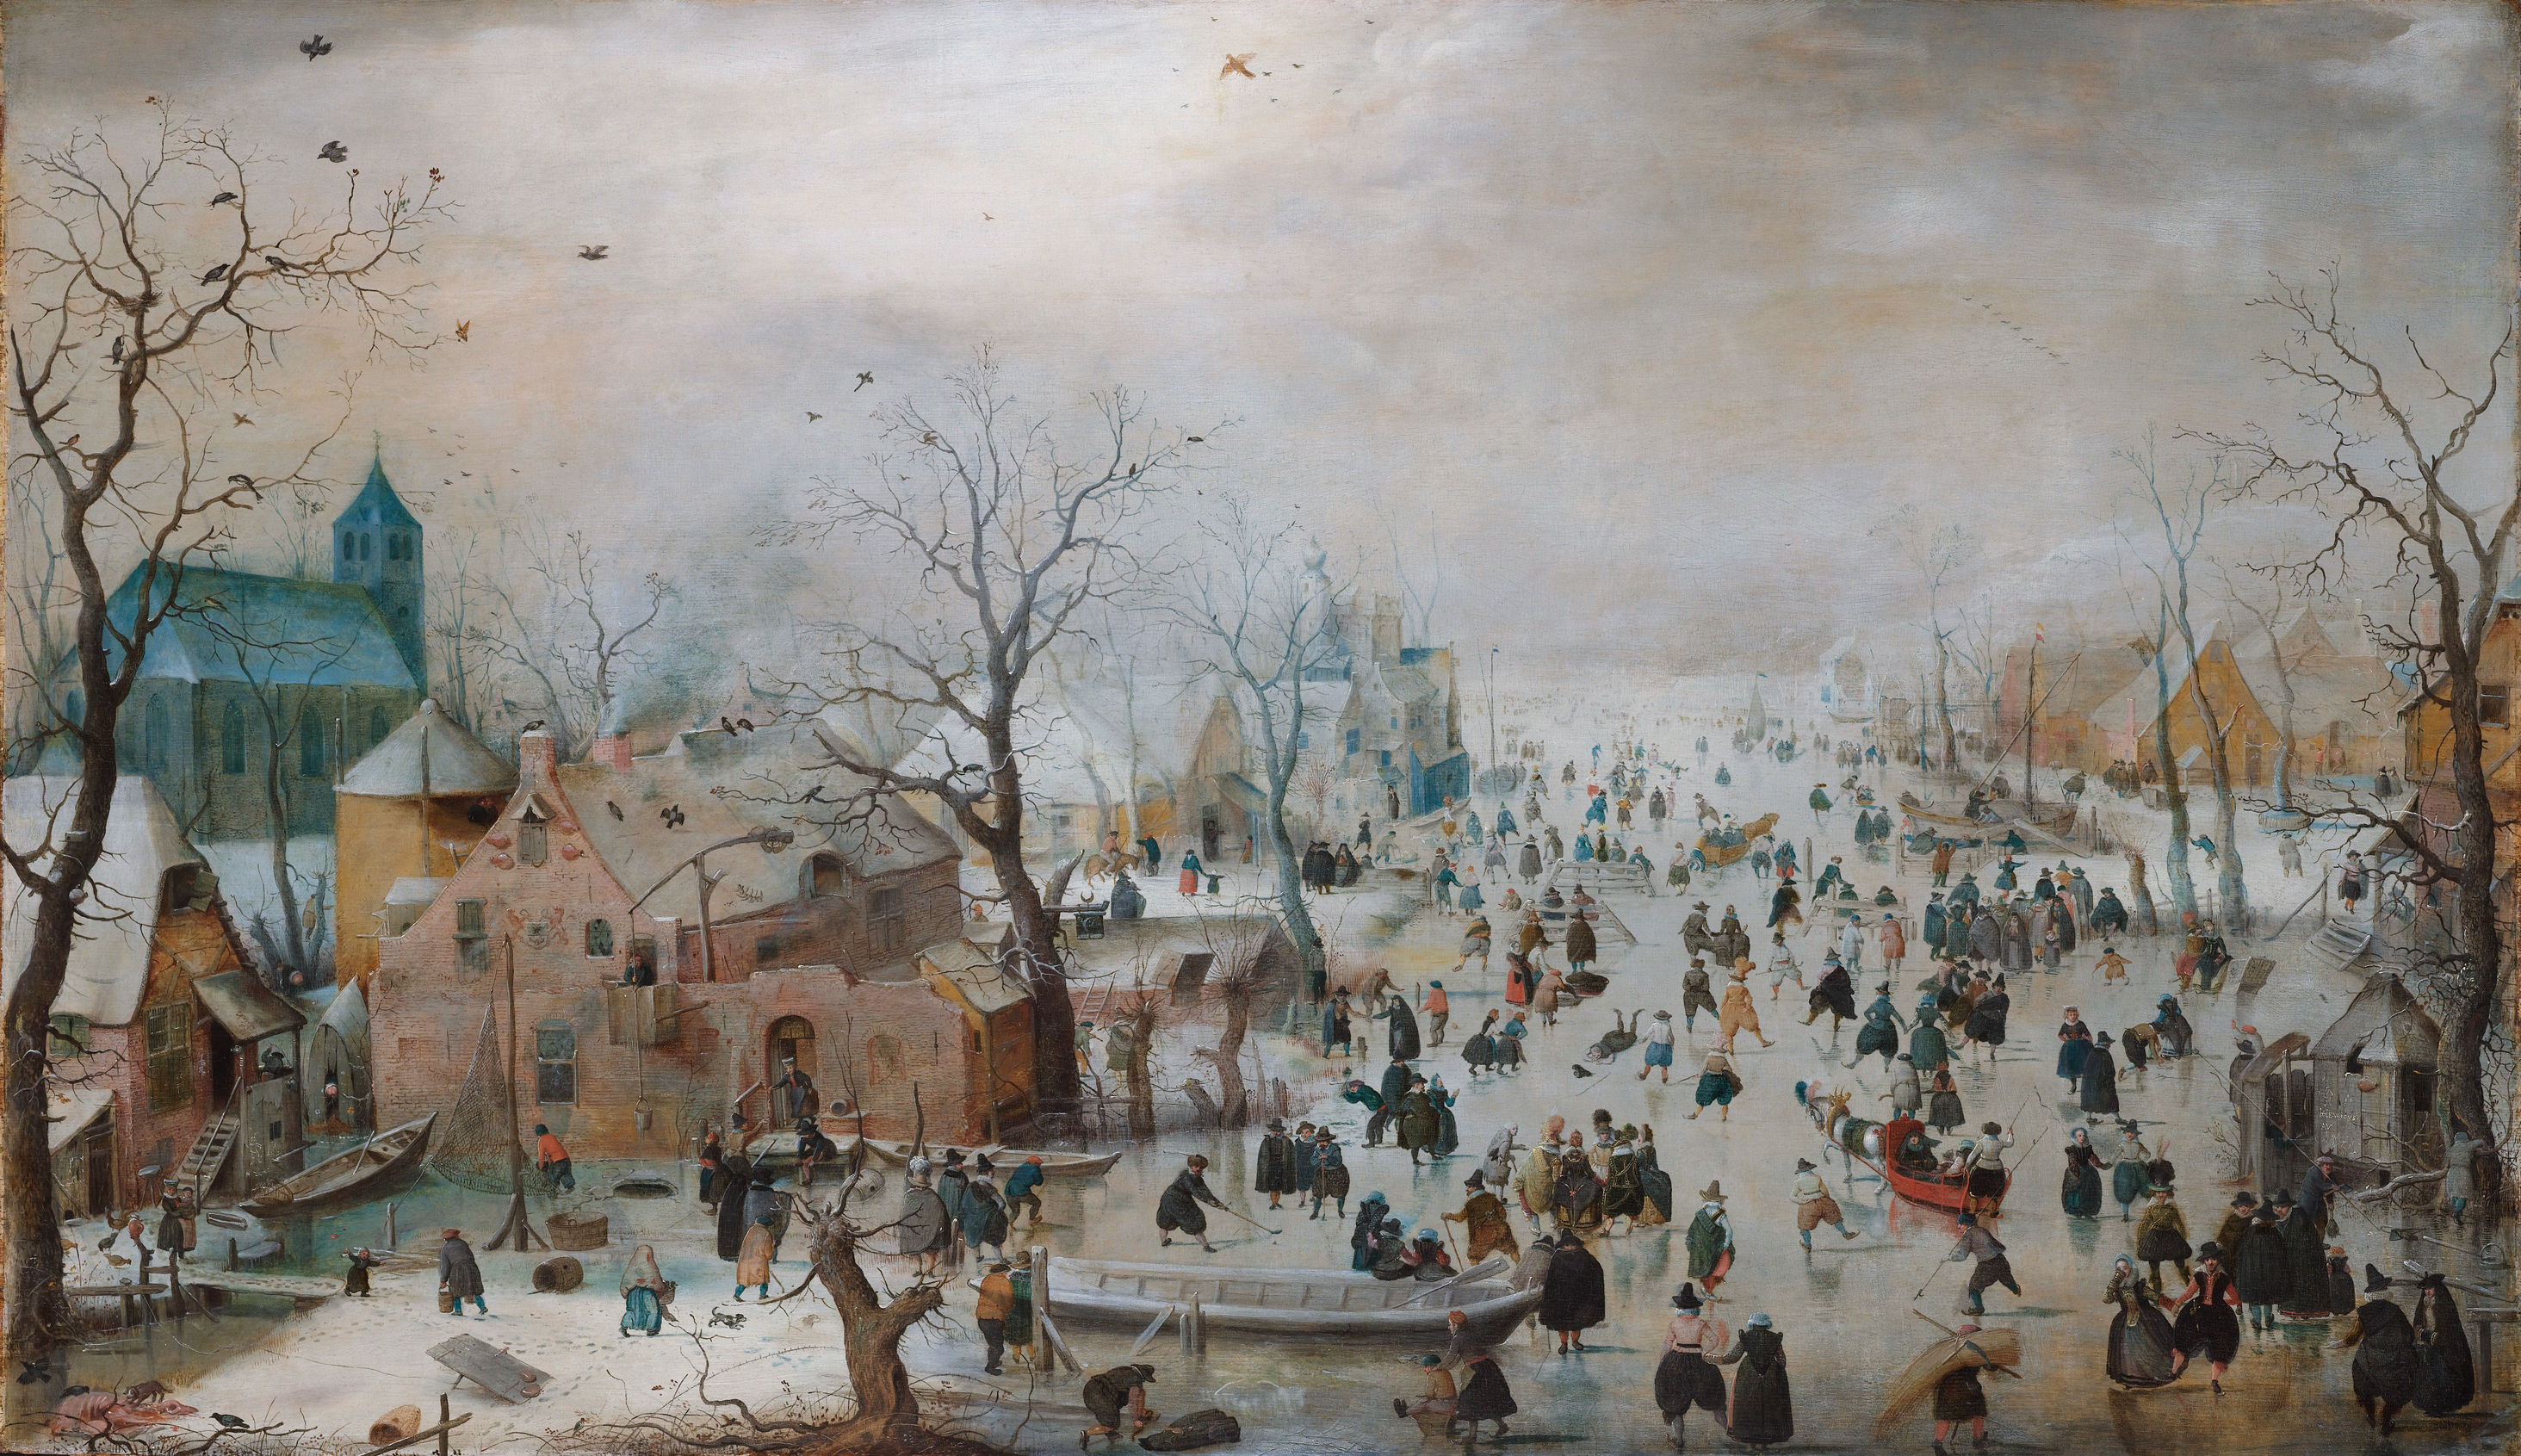 Pattinaggio su ghiaccio by Hendrick Avercamp - 1615 - 77,3 x 131,9cm 